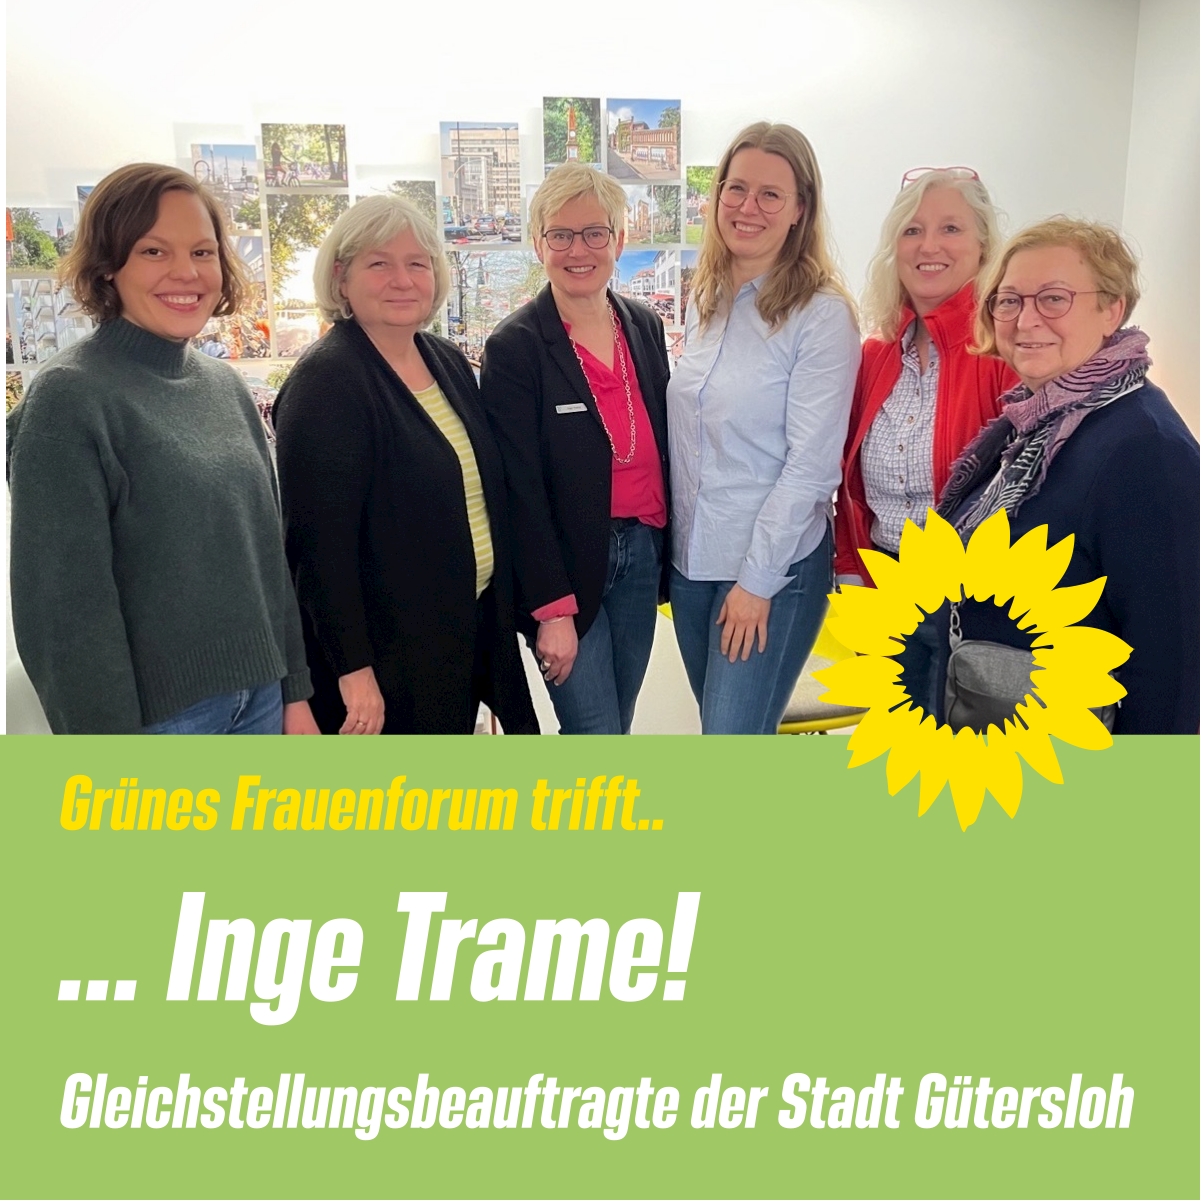 Grünes Frauenforum Gütersloh Gleichstellungsbeauftragte Inge Trame